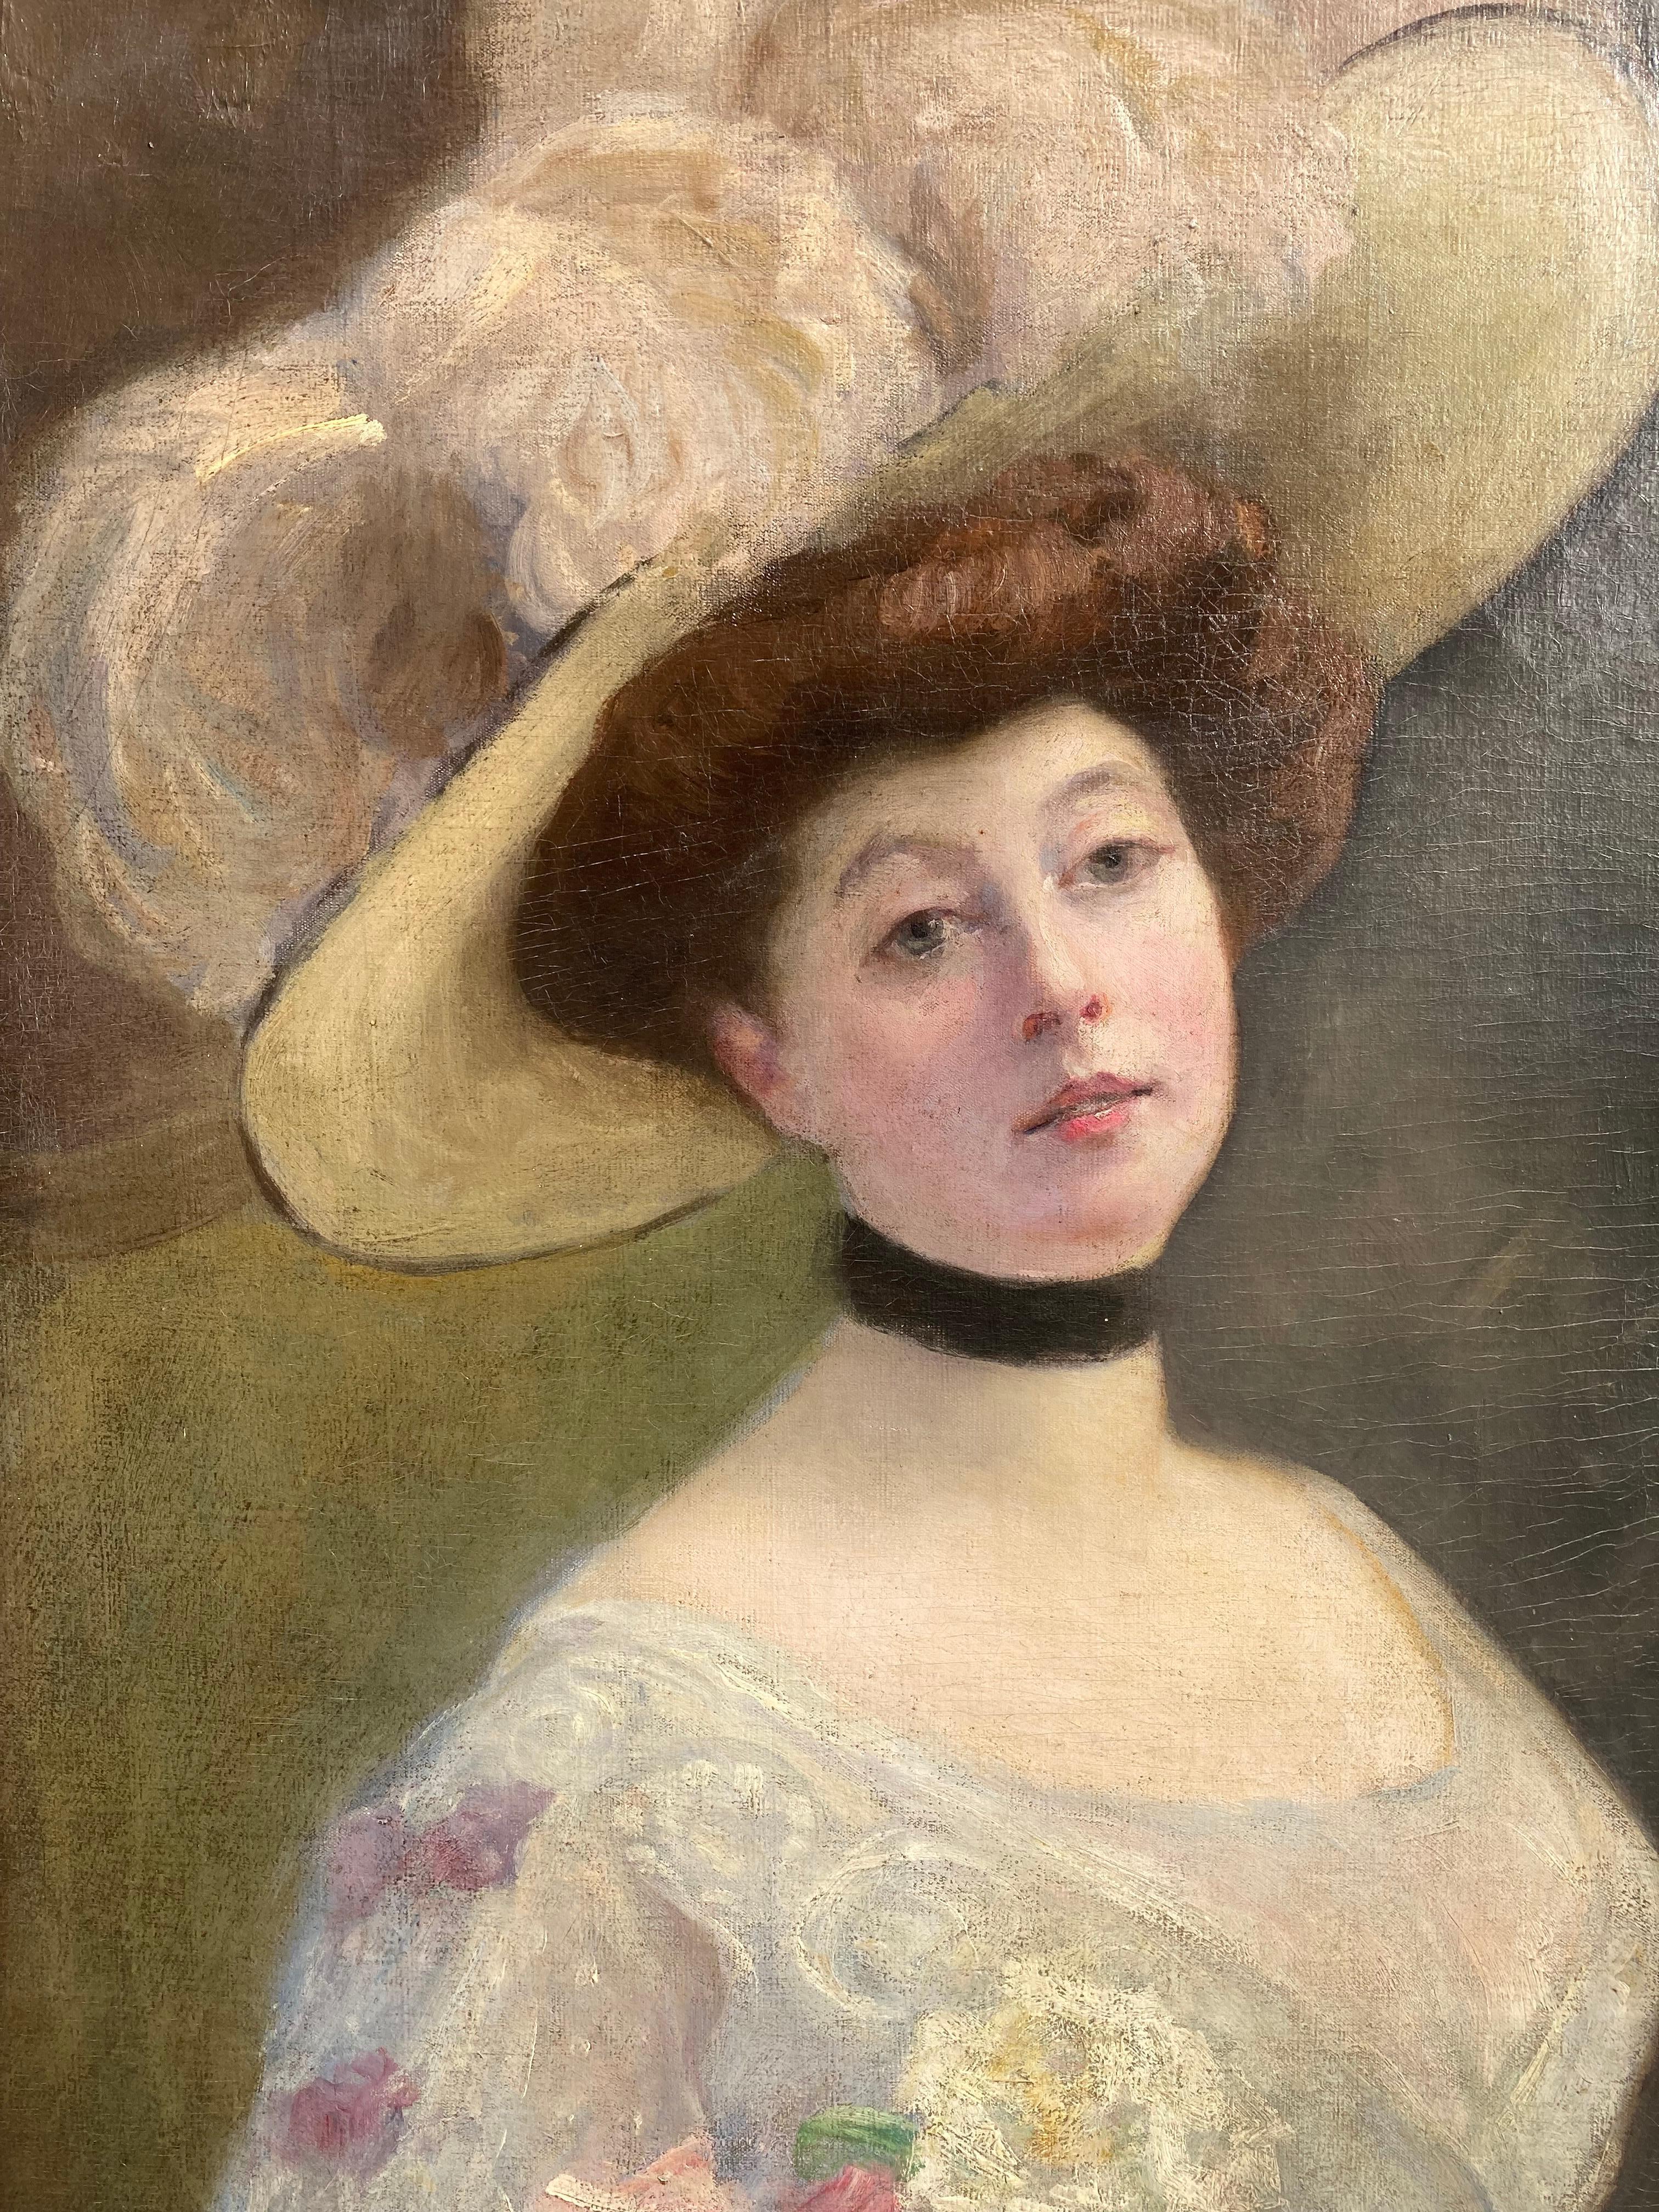 19th century portrait painters